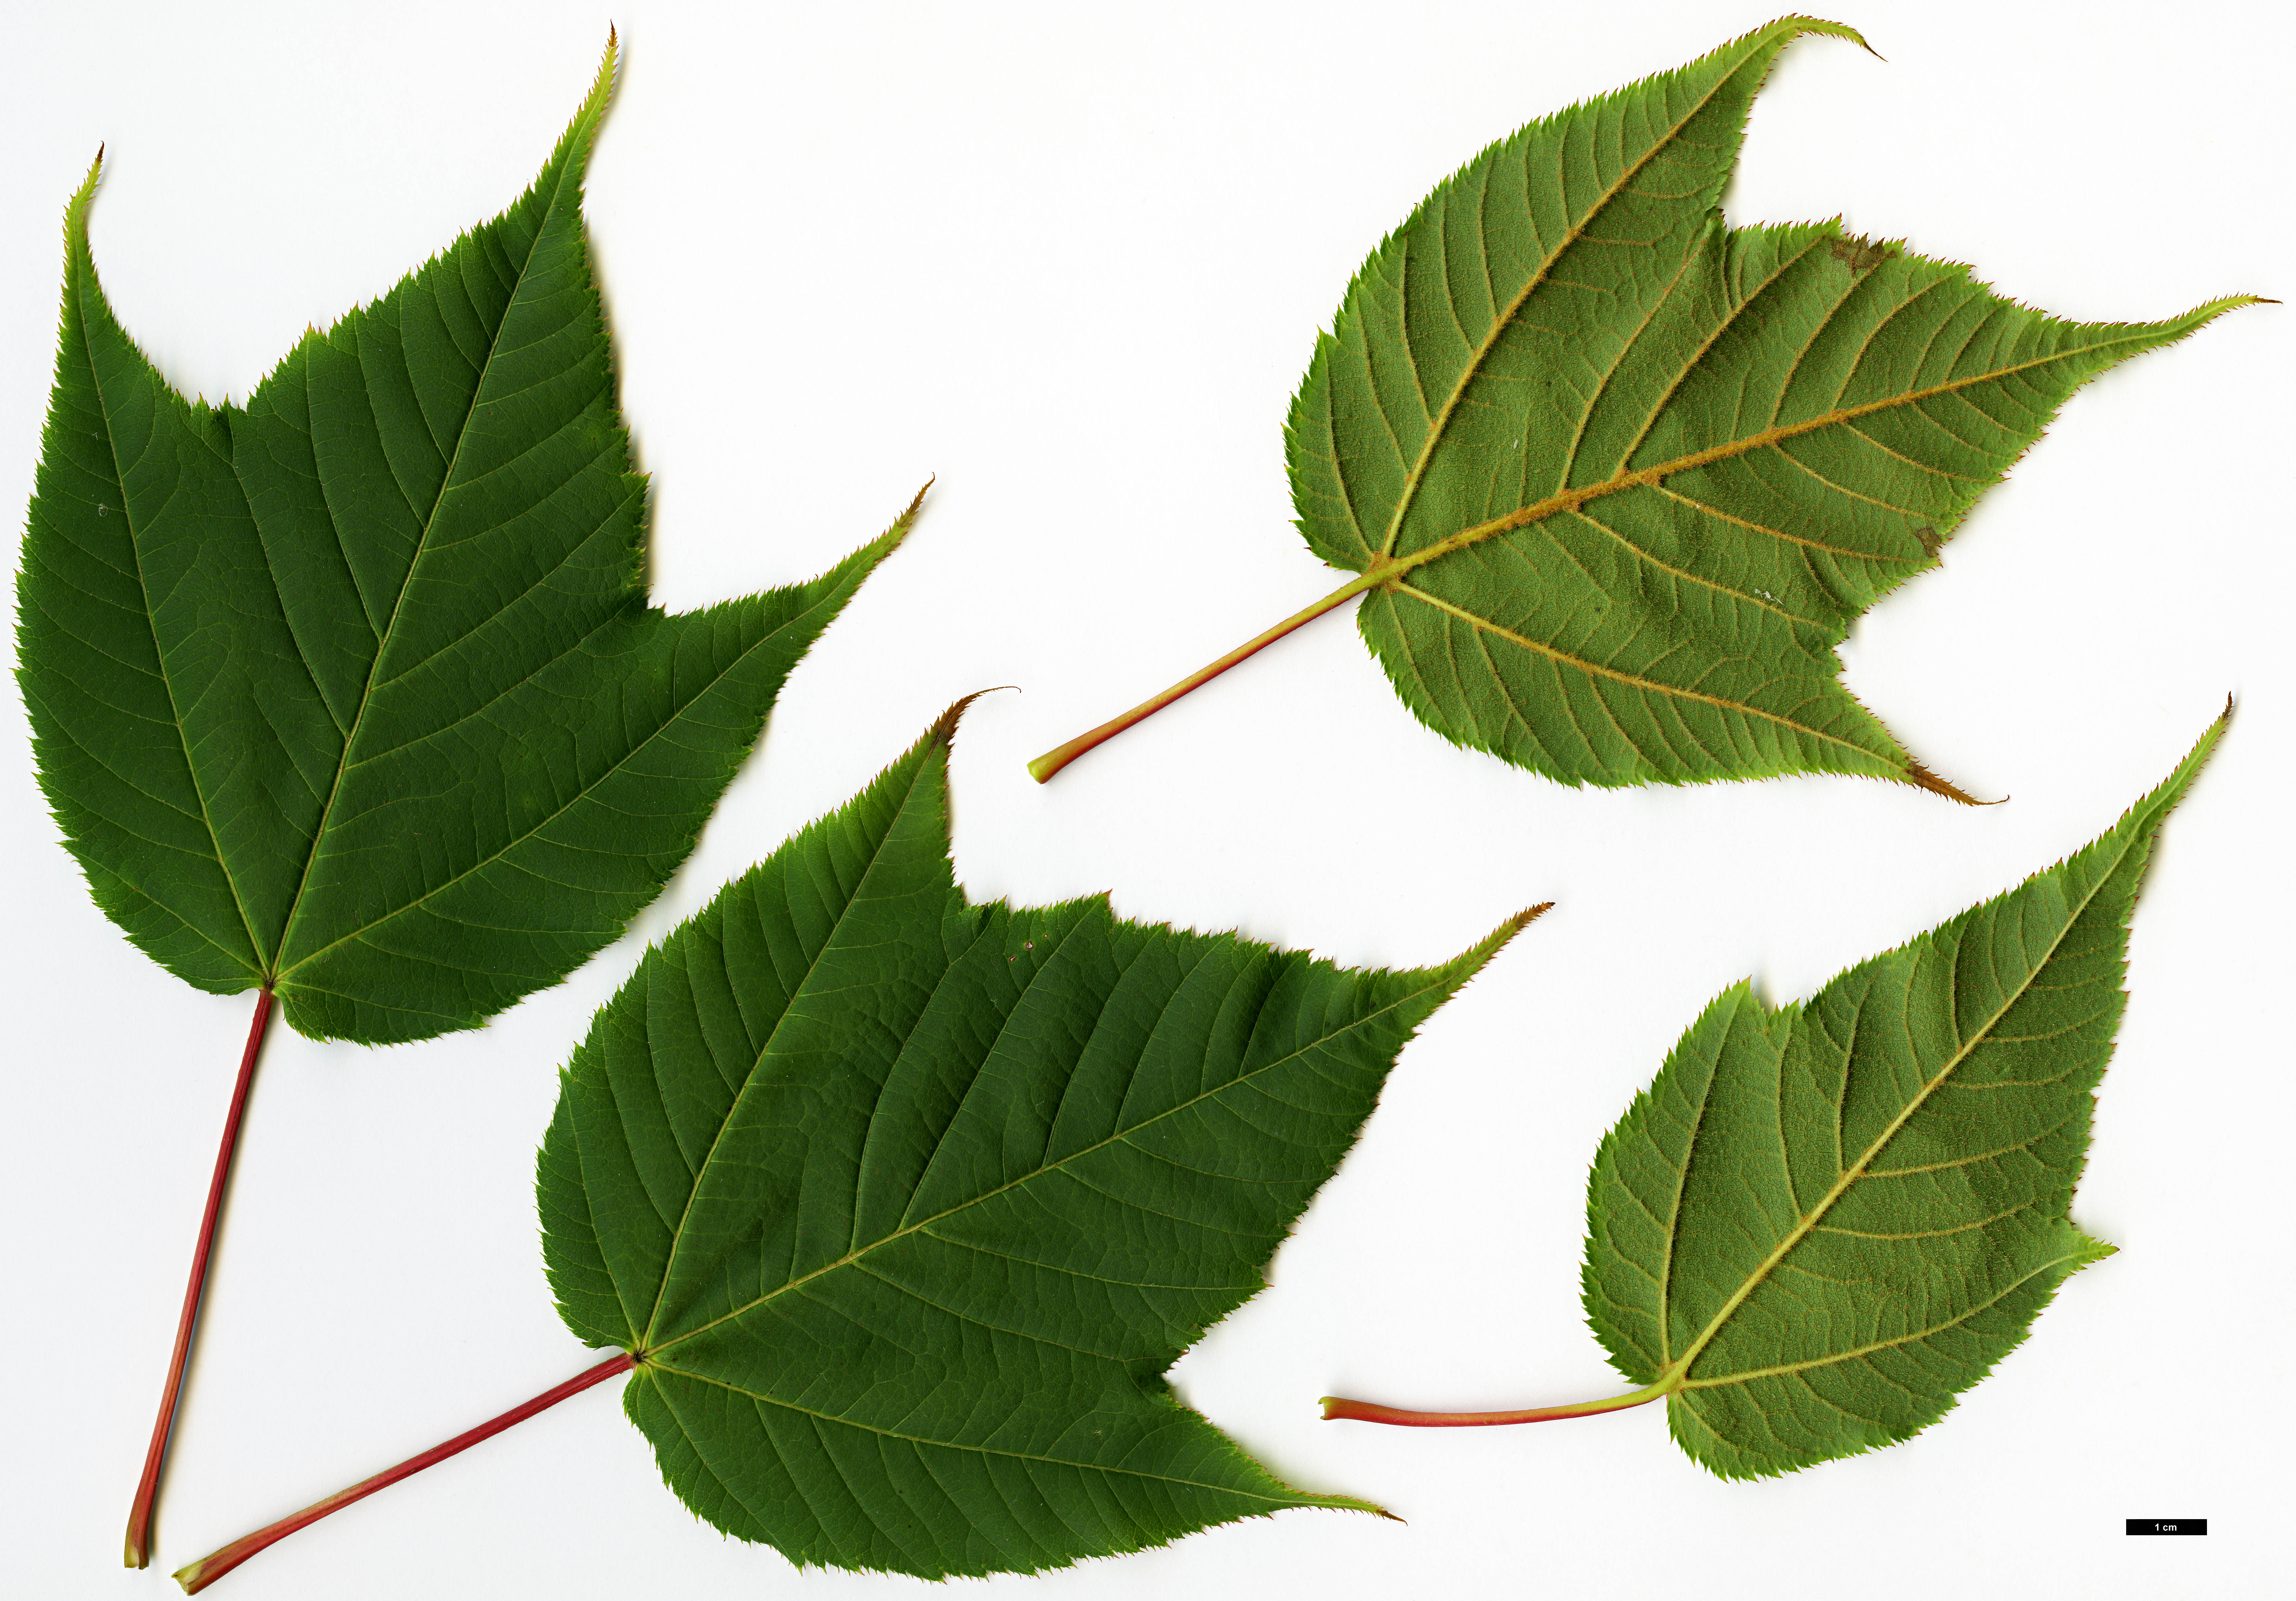 High resolution image: Family: Sapindaceae - Genus: Acer - Taxon: pectinatum - SpeciesSub: subsp. pectinatum